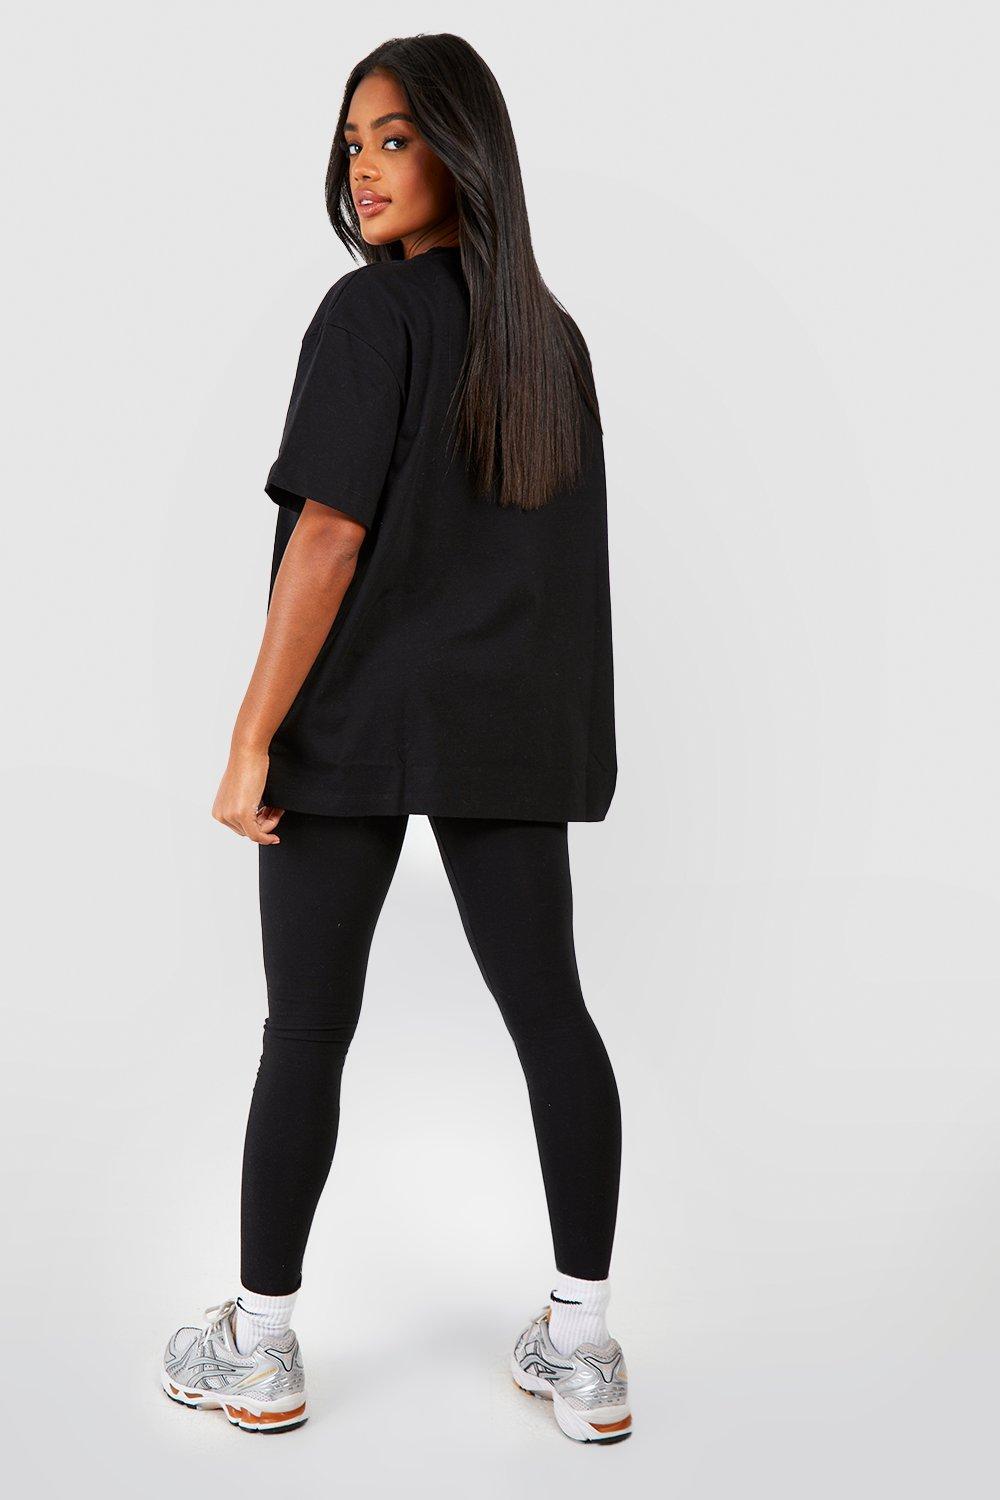 Women's Oversized T-shirt And Legging Set